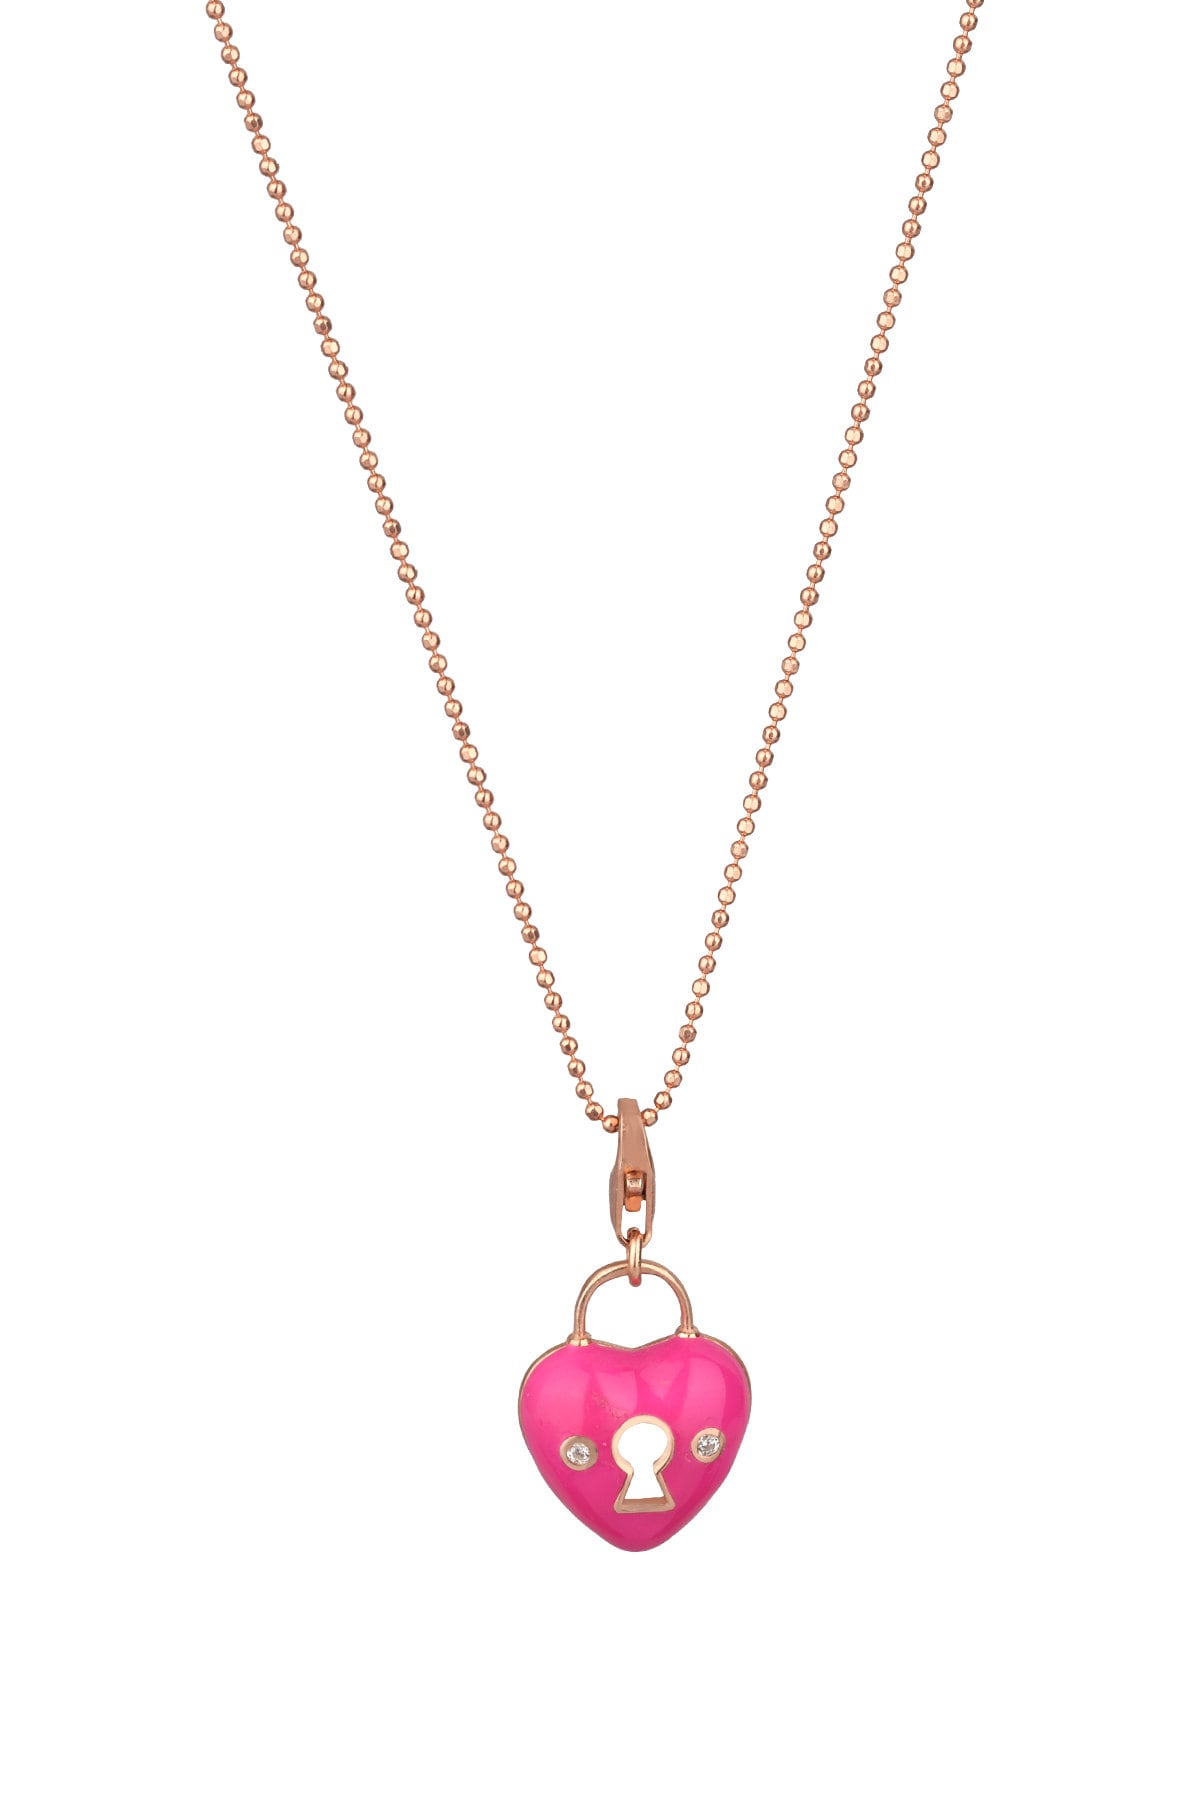 Pink Enamel Lock Heart Necklace Heart Choker Necklace - Etsy UK